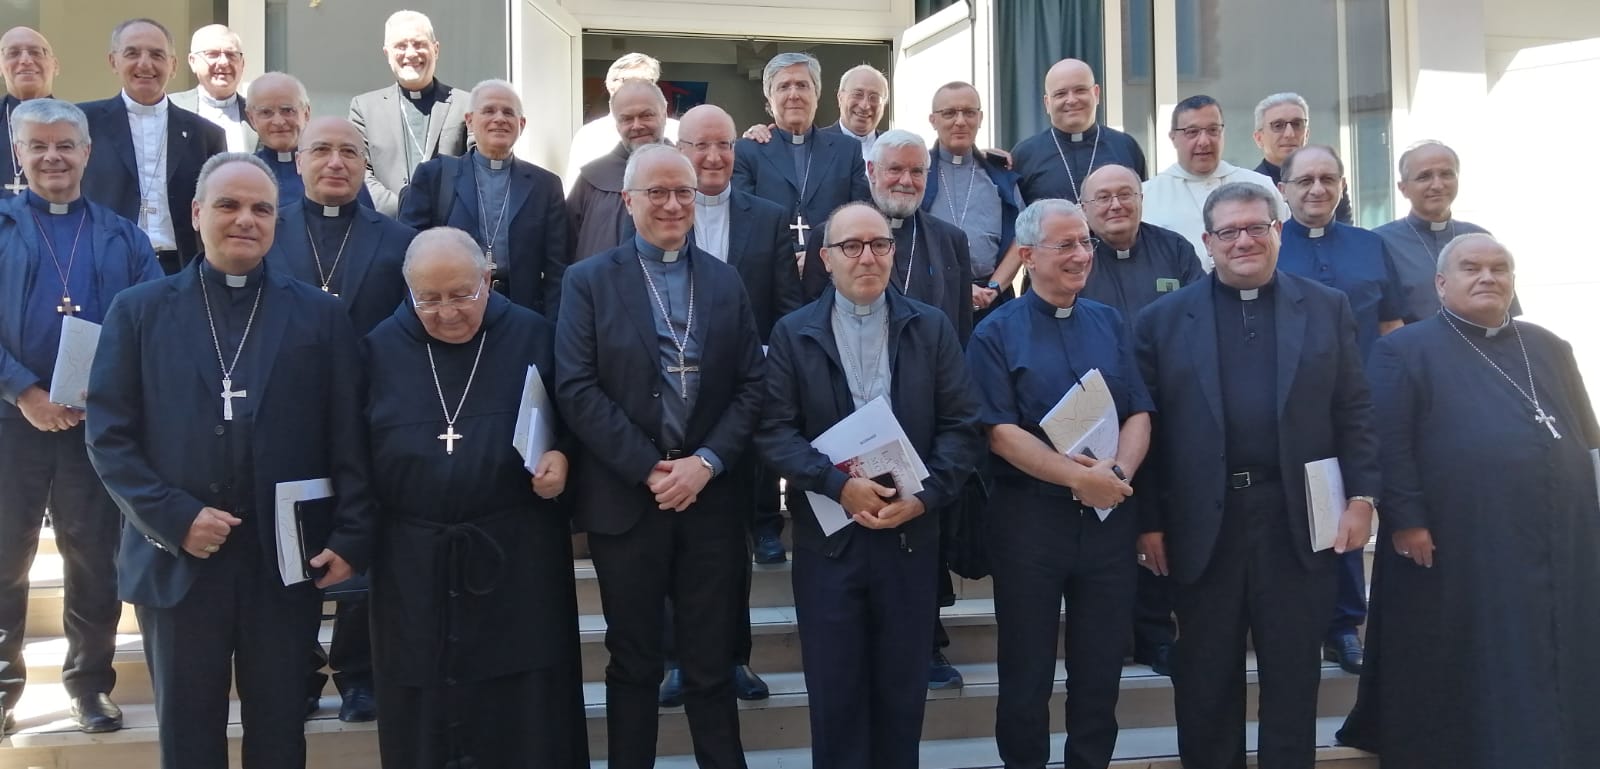 Benevento|Riunione vescovi aree interne, la lettera di Papa Francesco e le parole di Accrocca